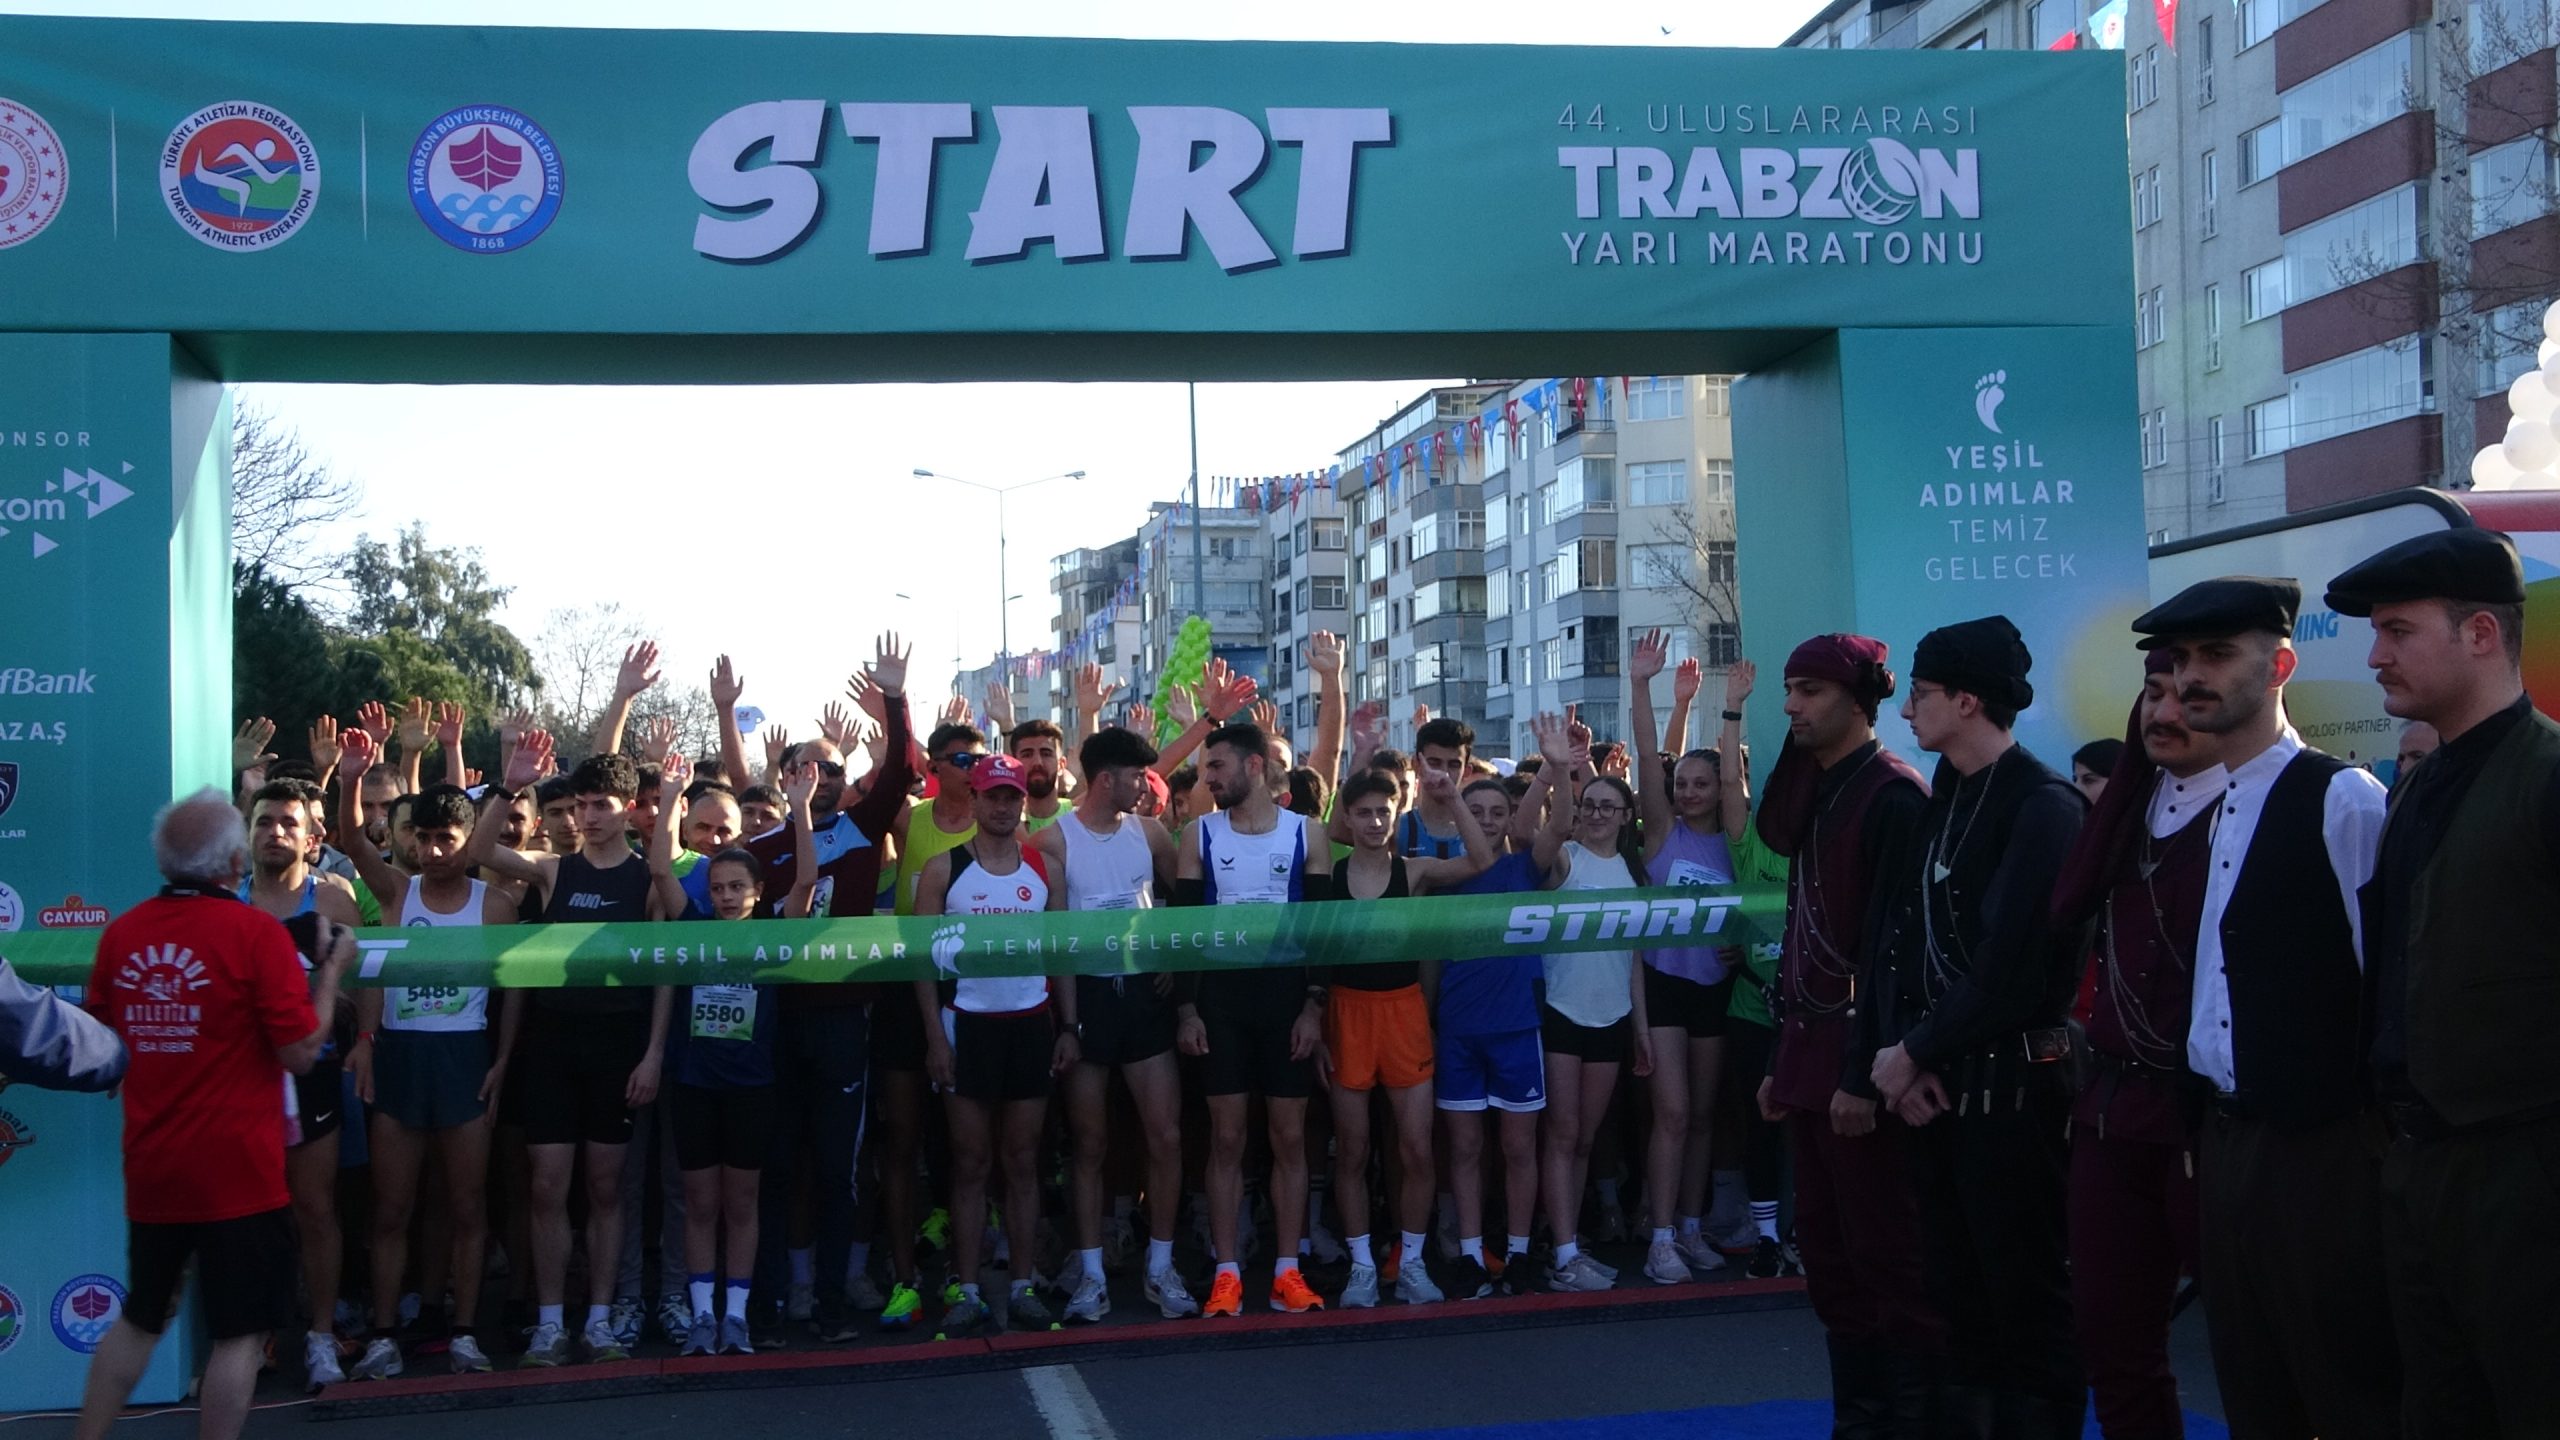 Uluslararası Trabzon Yarı Maratonu, ‘Yeşil geleceğimiz, yeşil adımlar ve temiz gelecek’ sloganıyla koşuldu